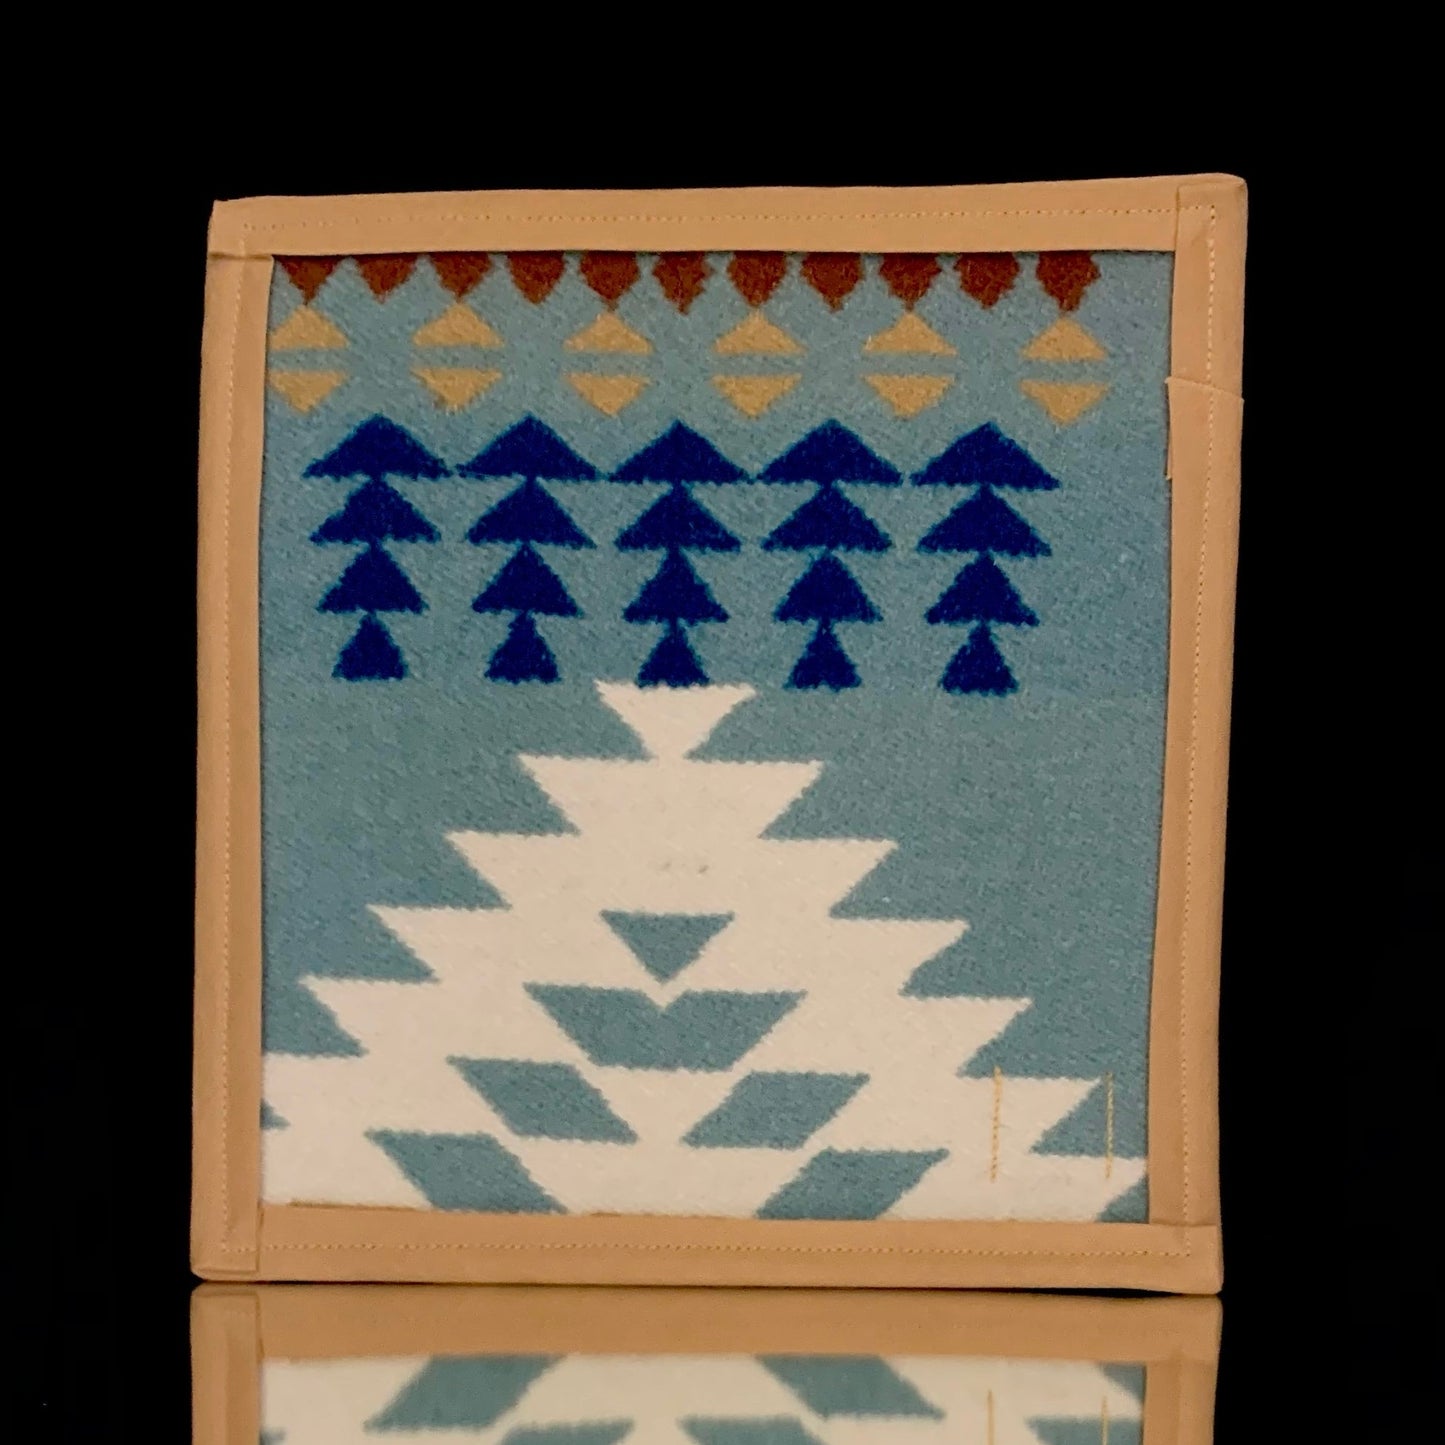 7” x 7.5” Pendleton mat by Wook Wear